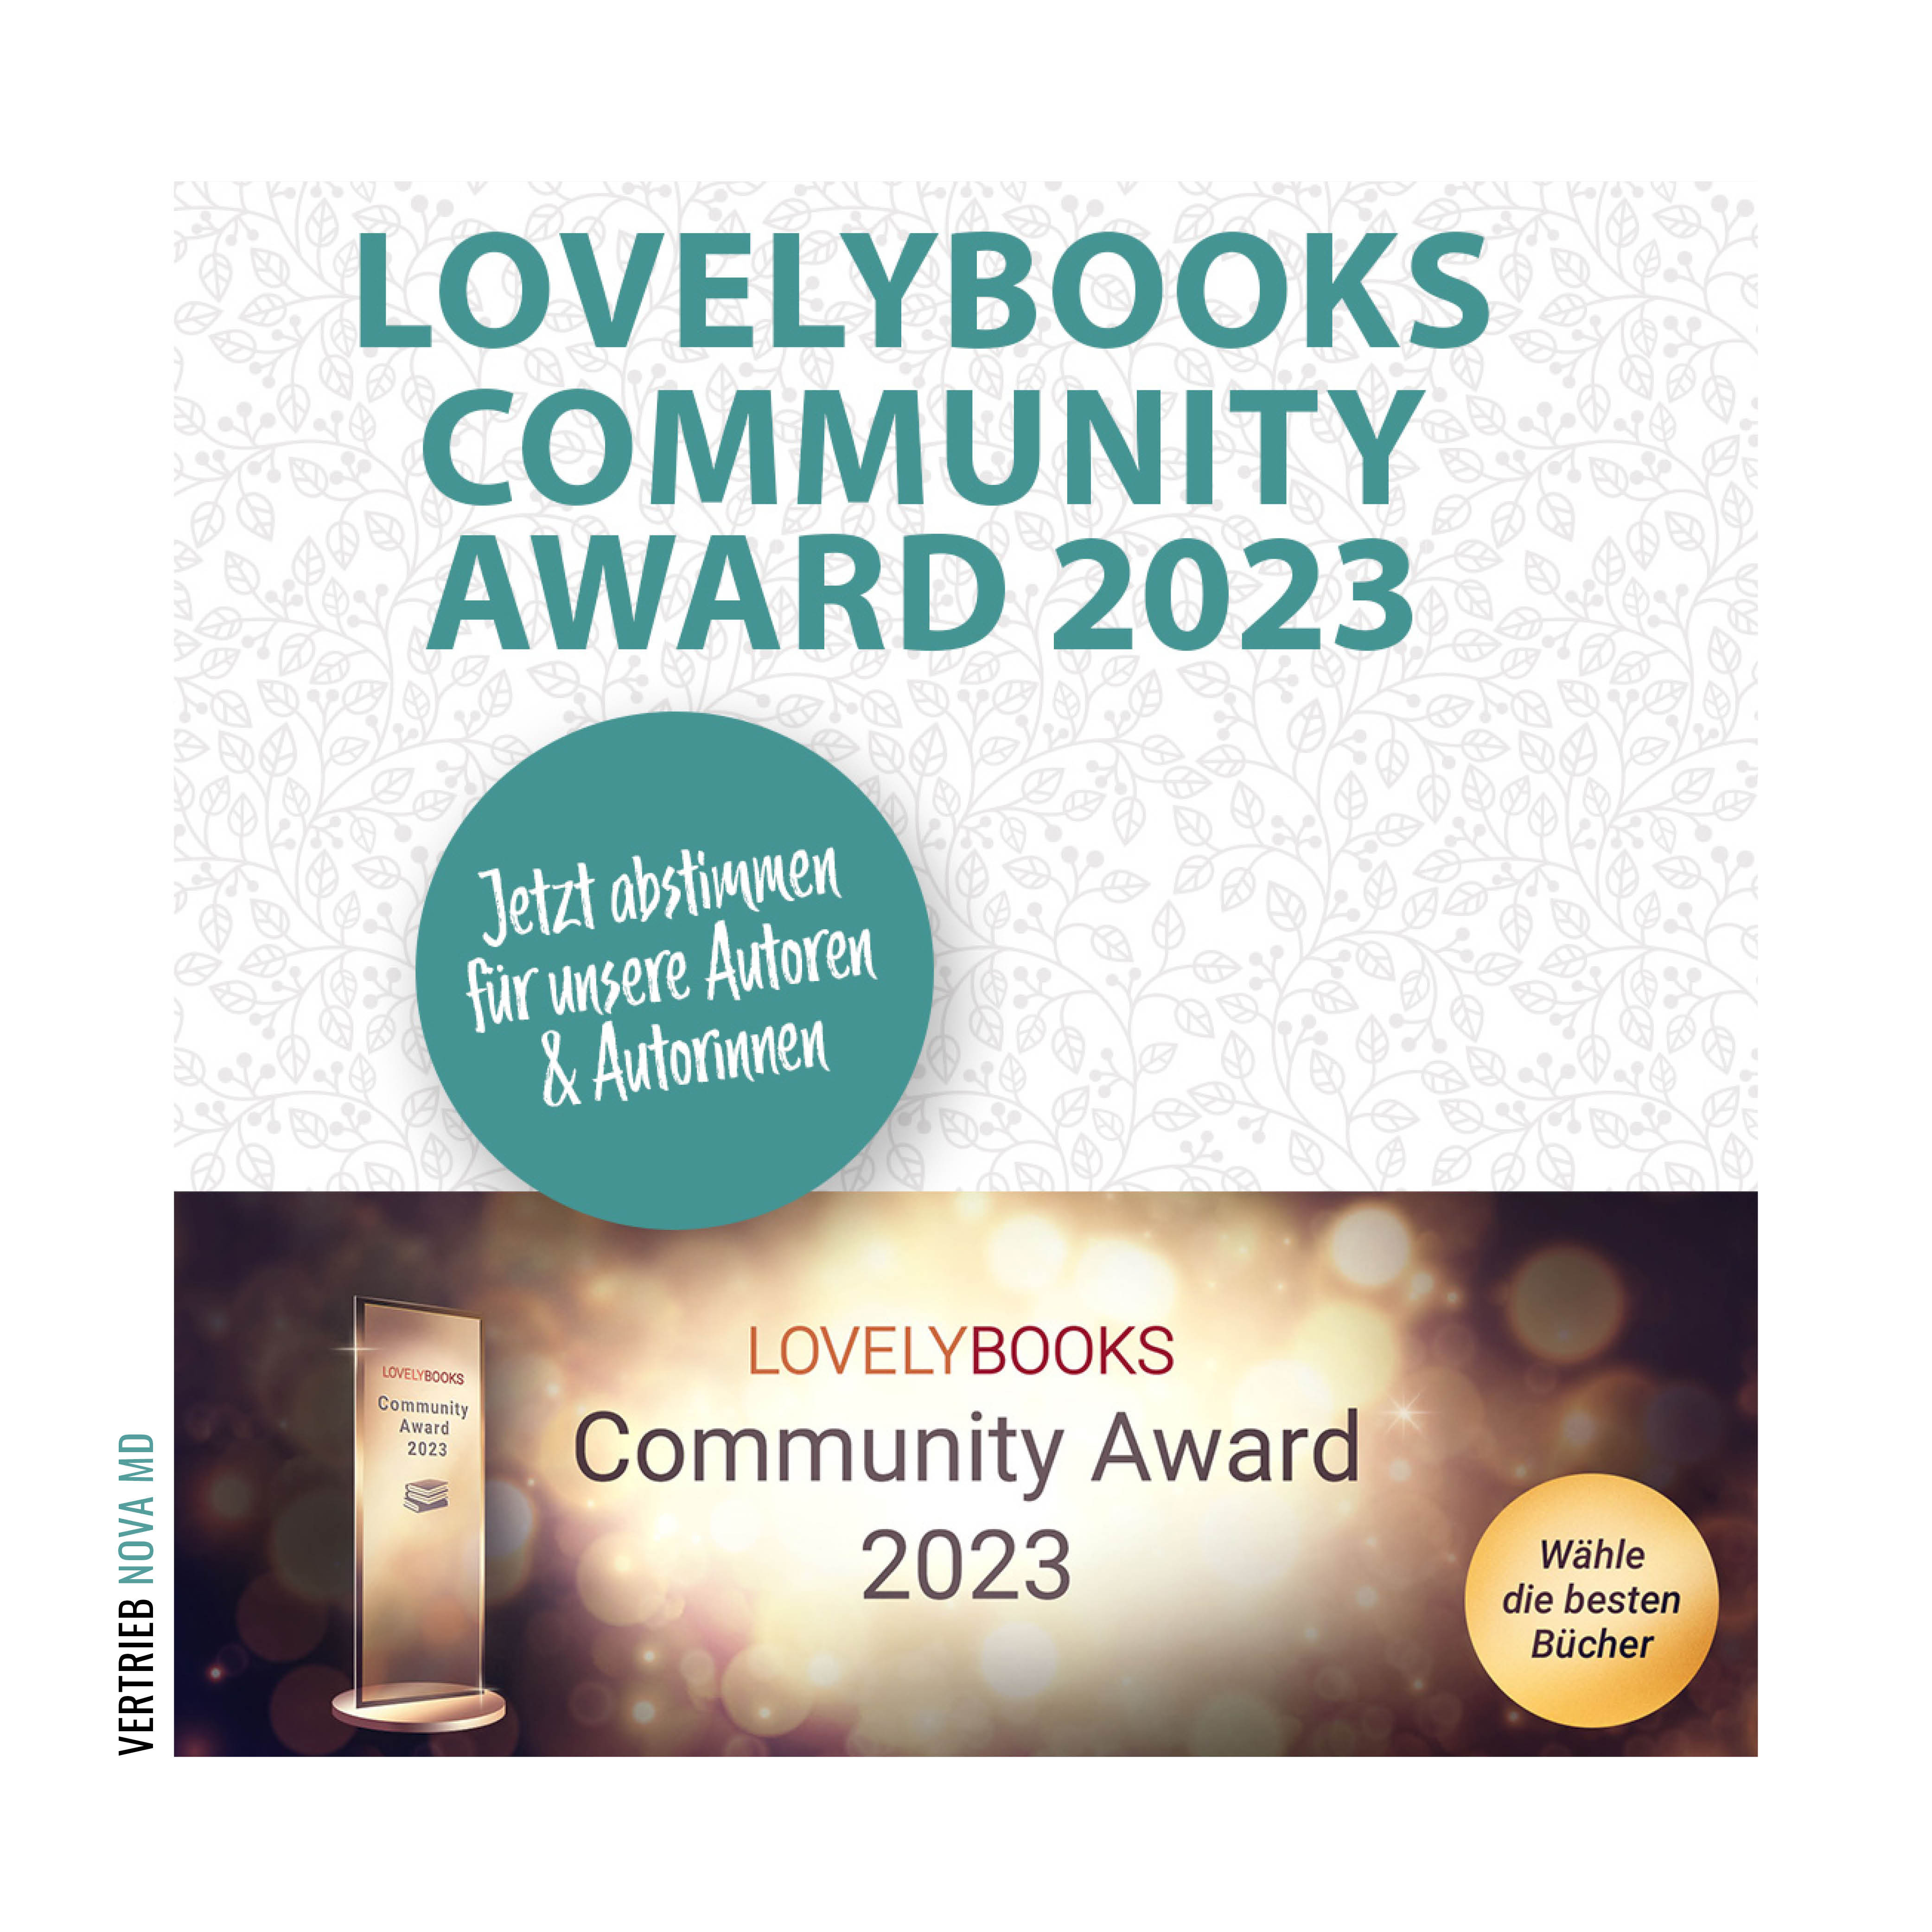 Text Ankündigung Lovelybooks Community Award 2023 und Abbildung der Auszeichnung